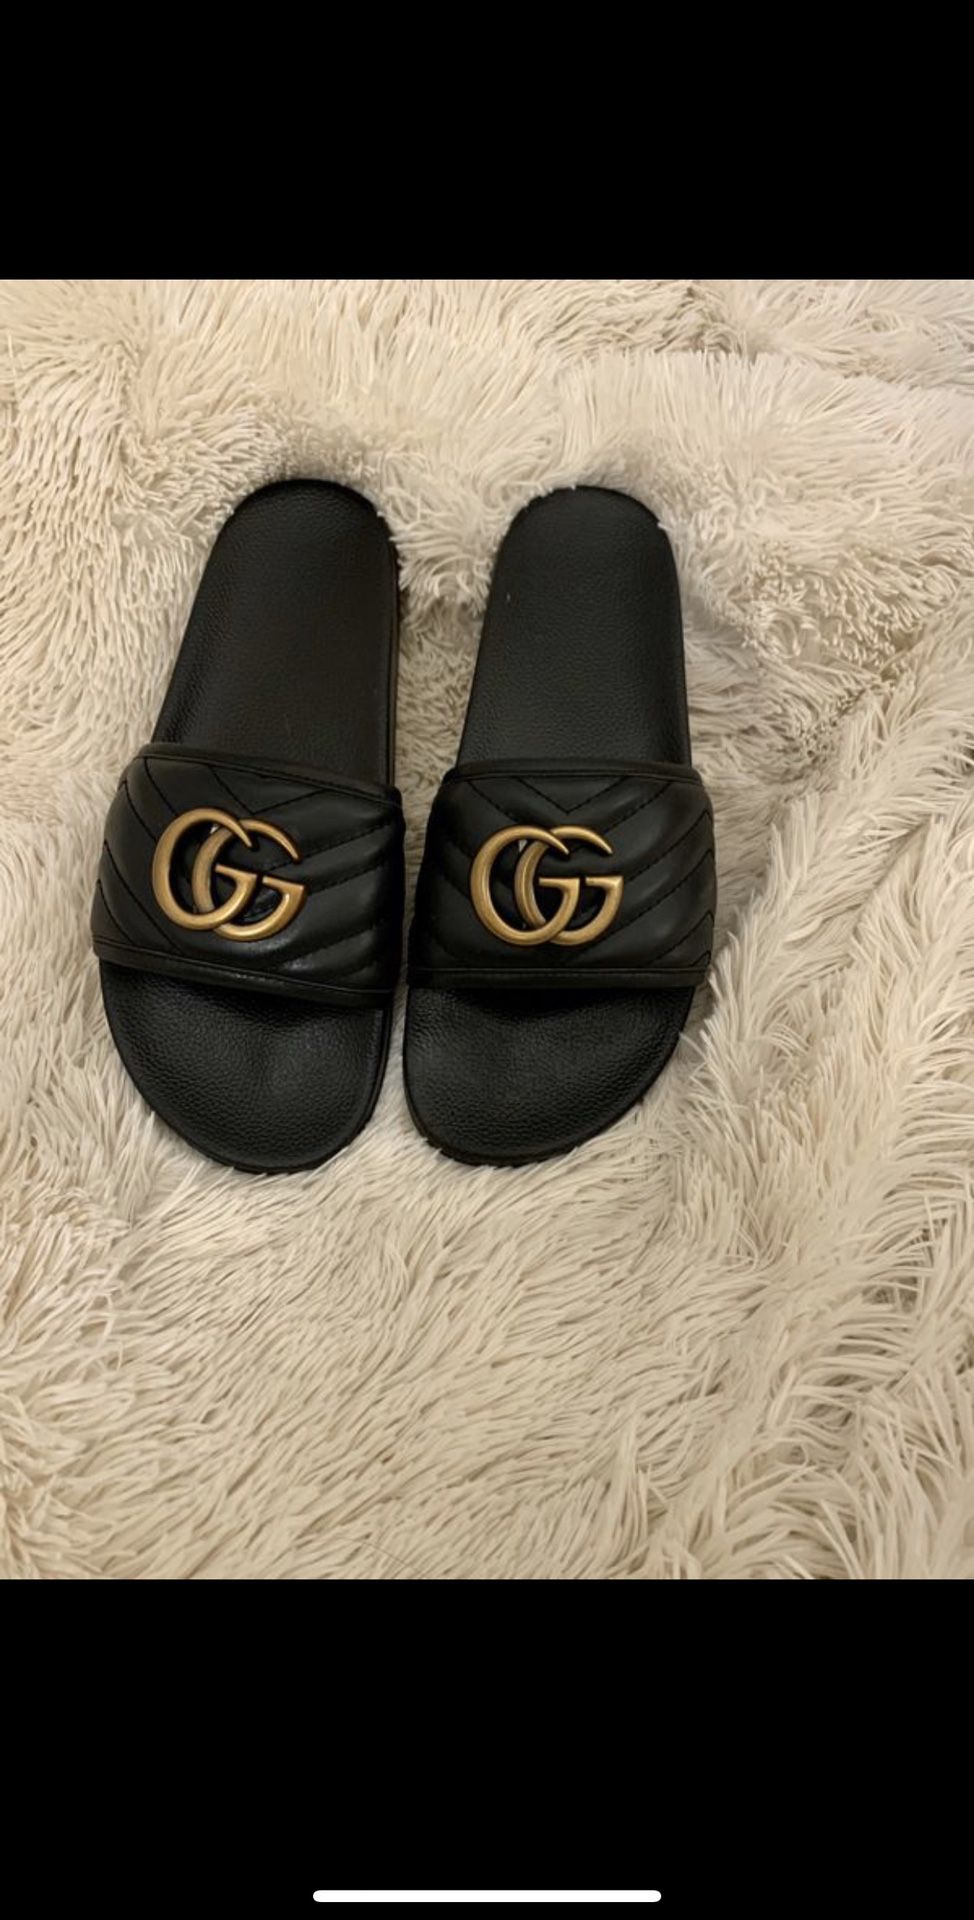 Gucci Sandals size 10 women / 8.5 men